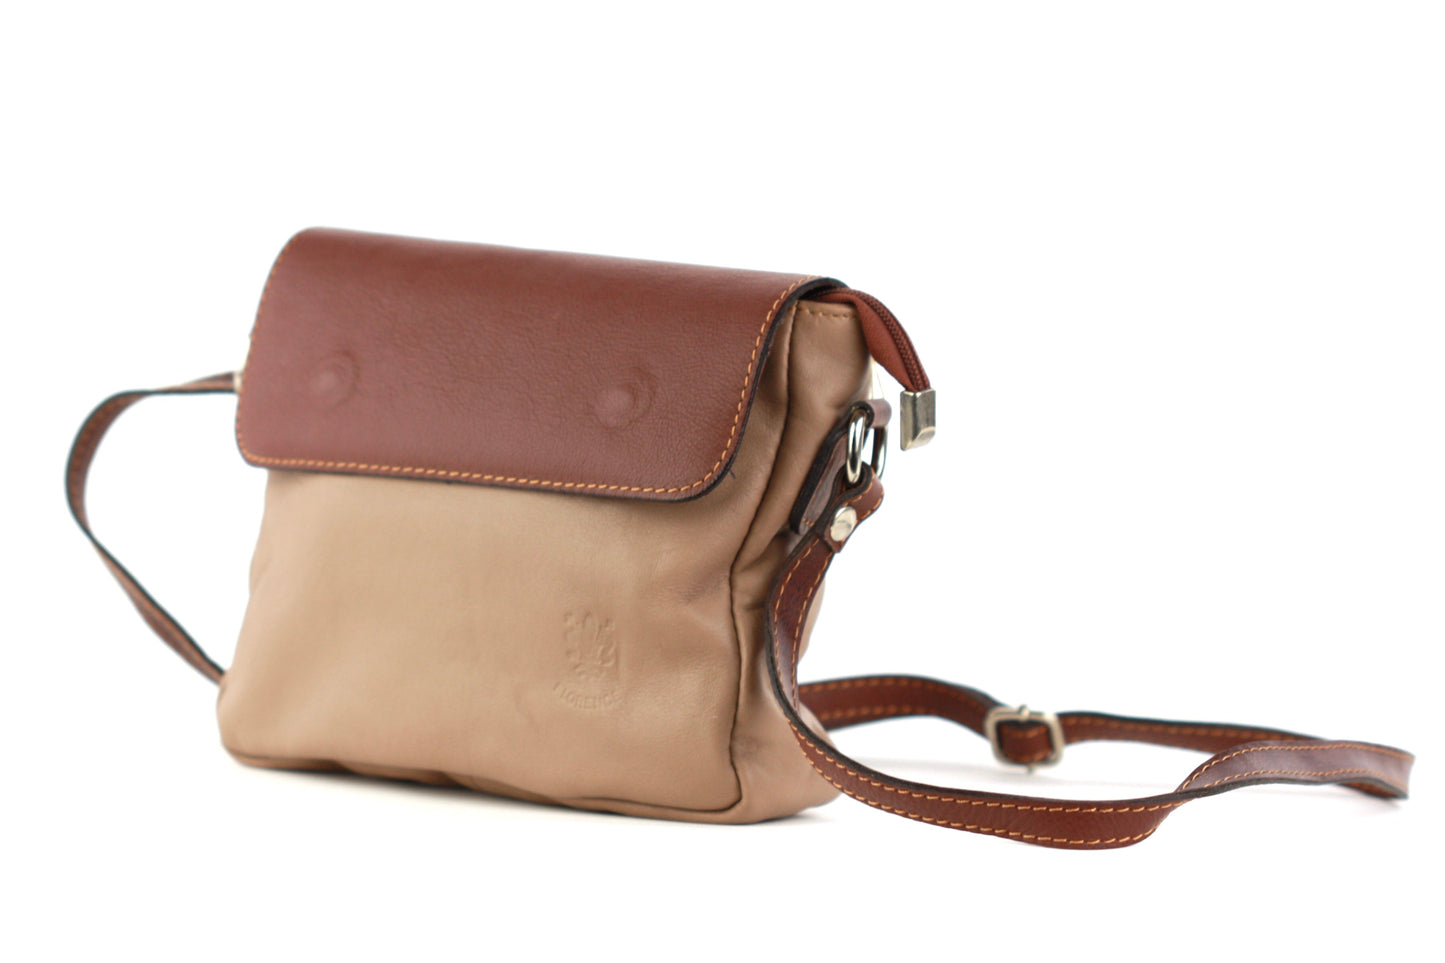 Penelope handbag in tan and brown